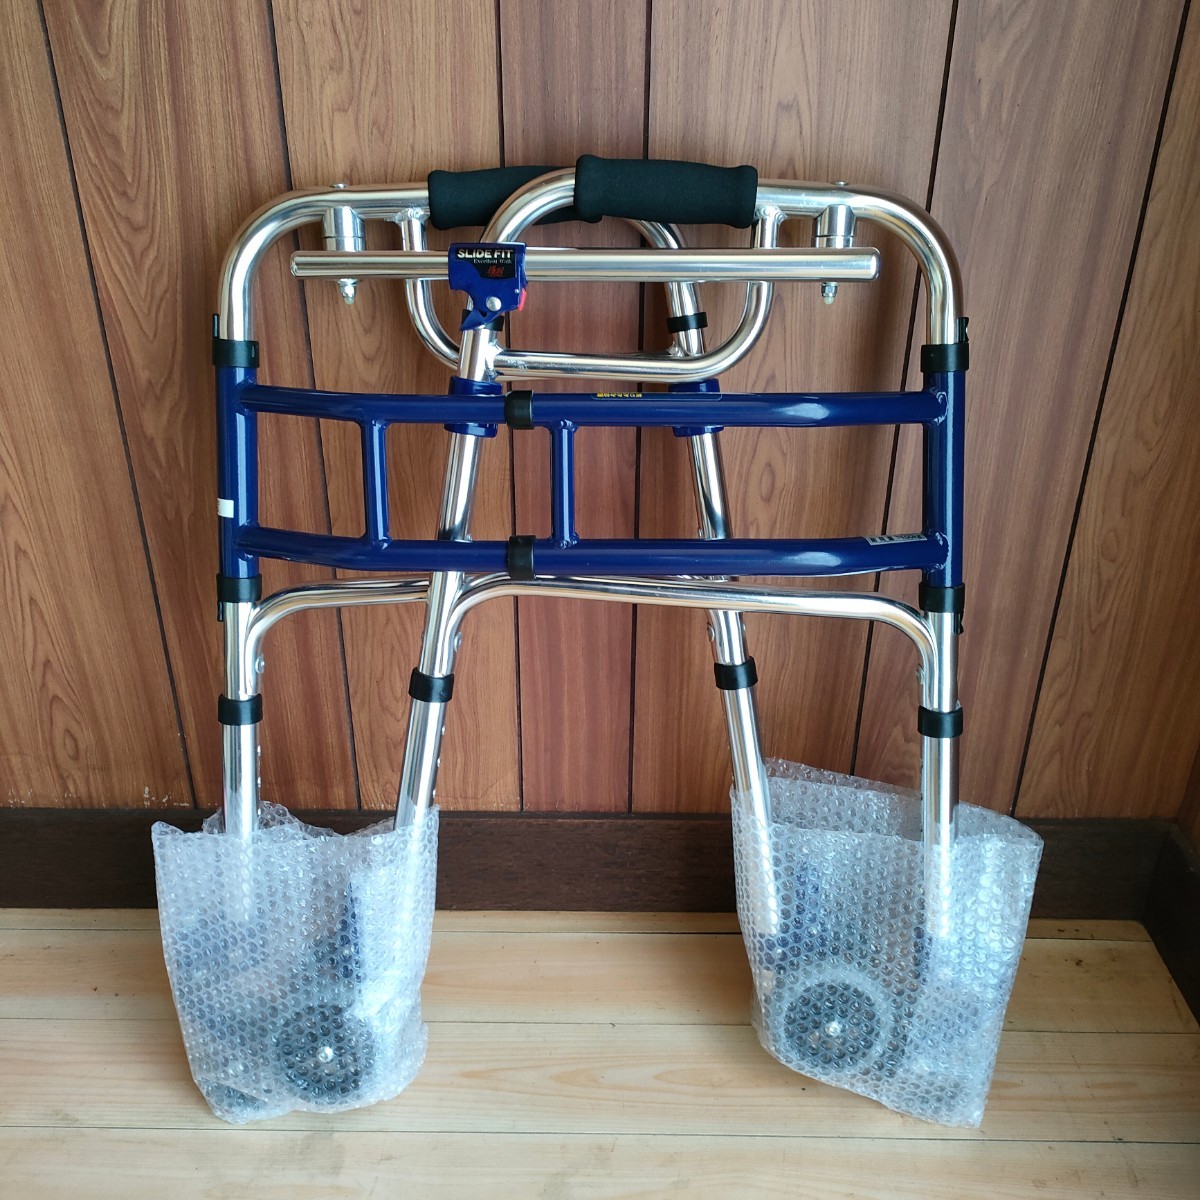 SALE／102%OFF】 歩行器 スライドフィット 優羽 車輪付き 折り畳み可能 